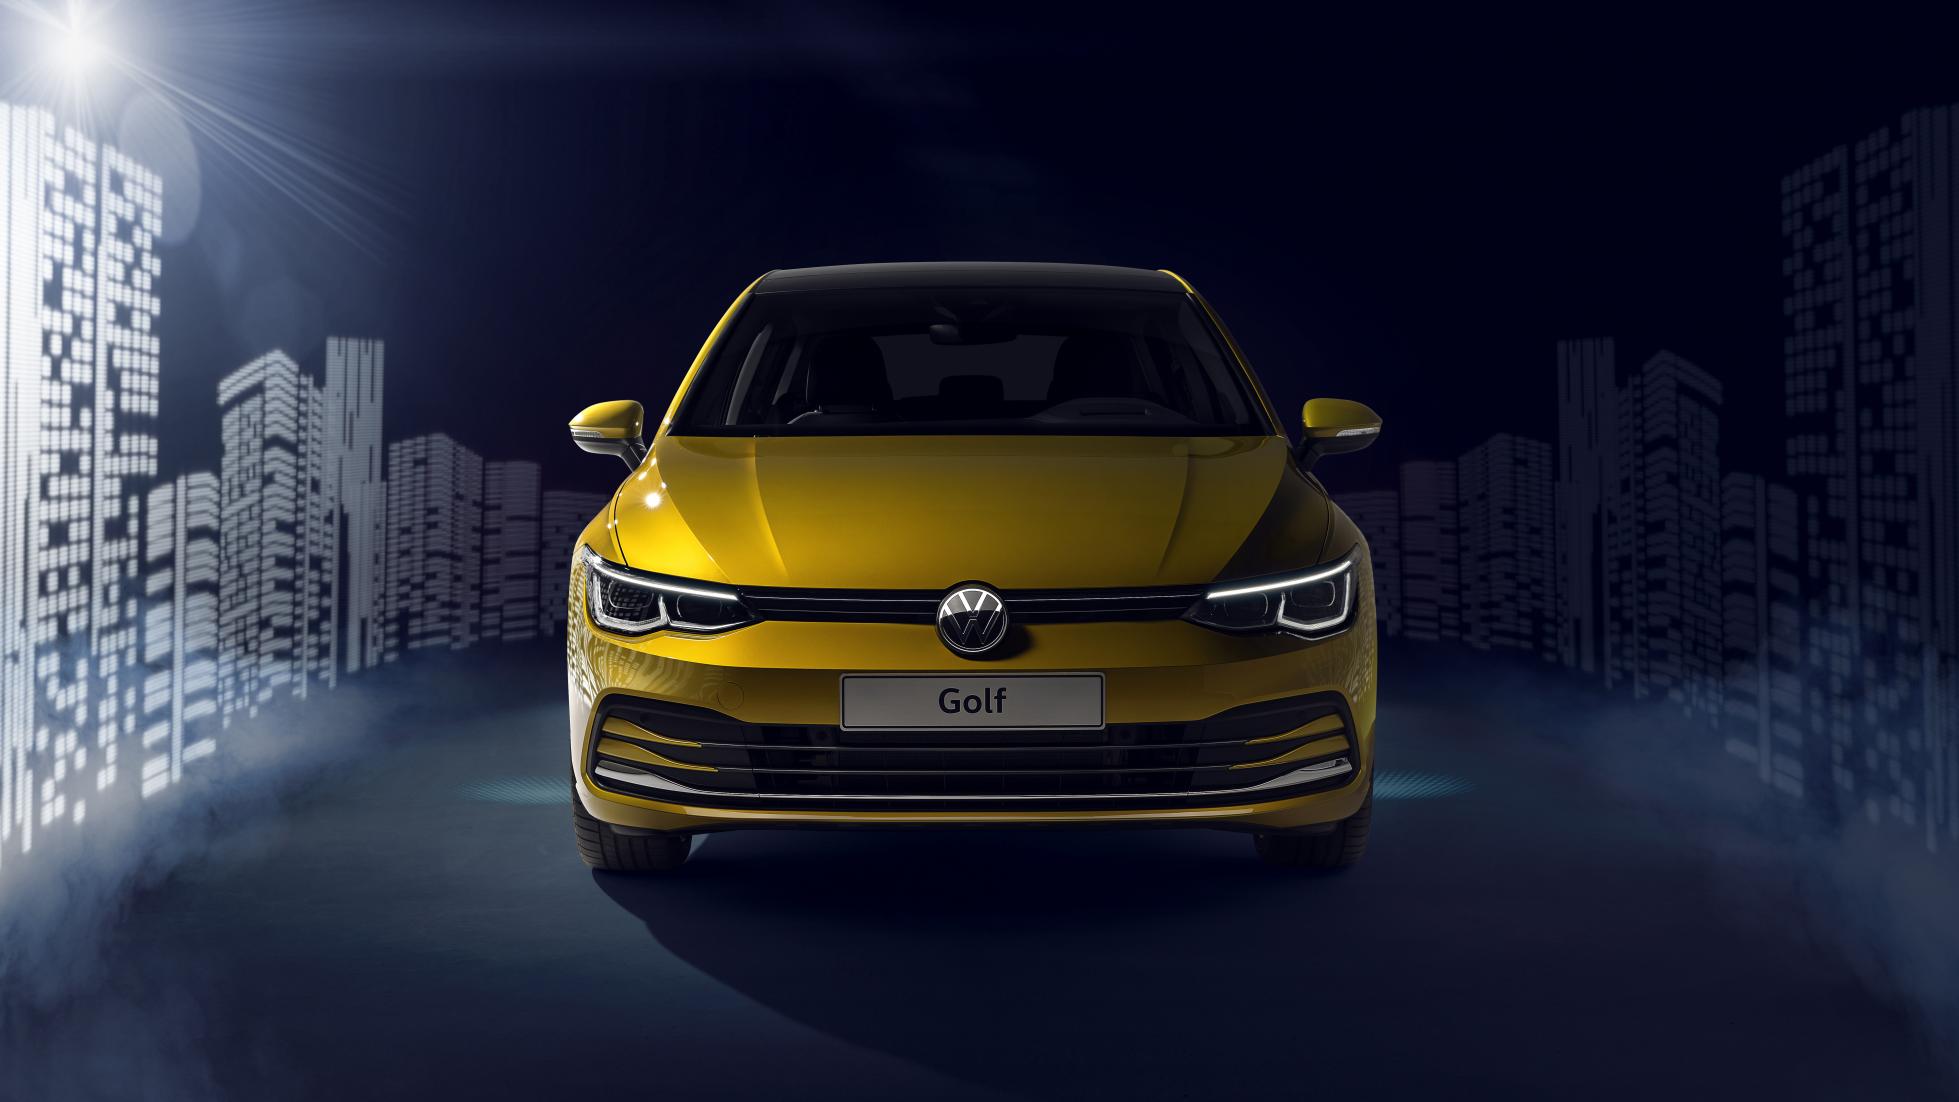 Volkswagen. Une nouvelle interface avec plus de boutons pour bientôt